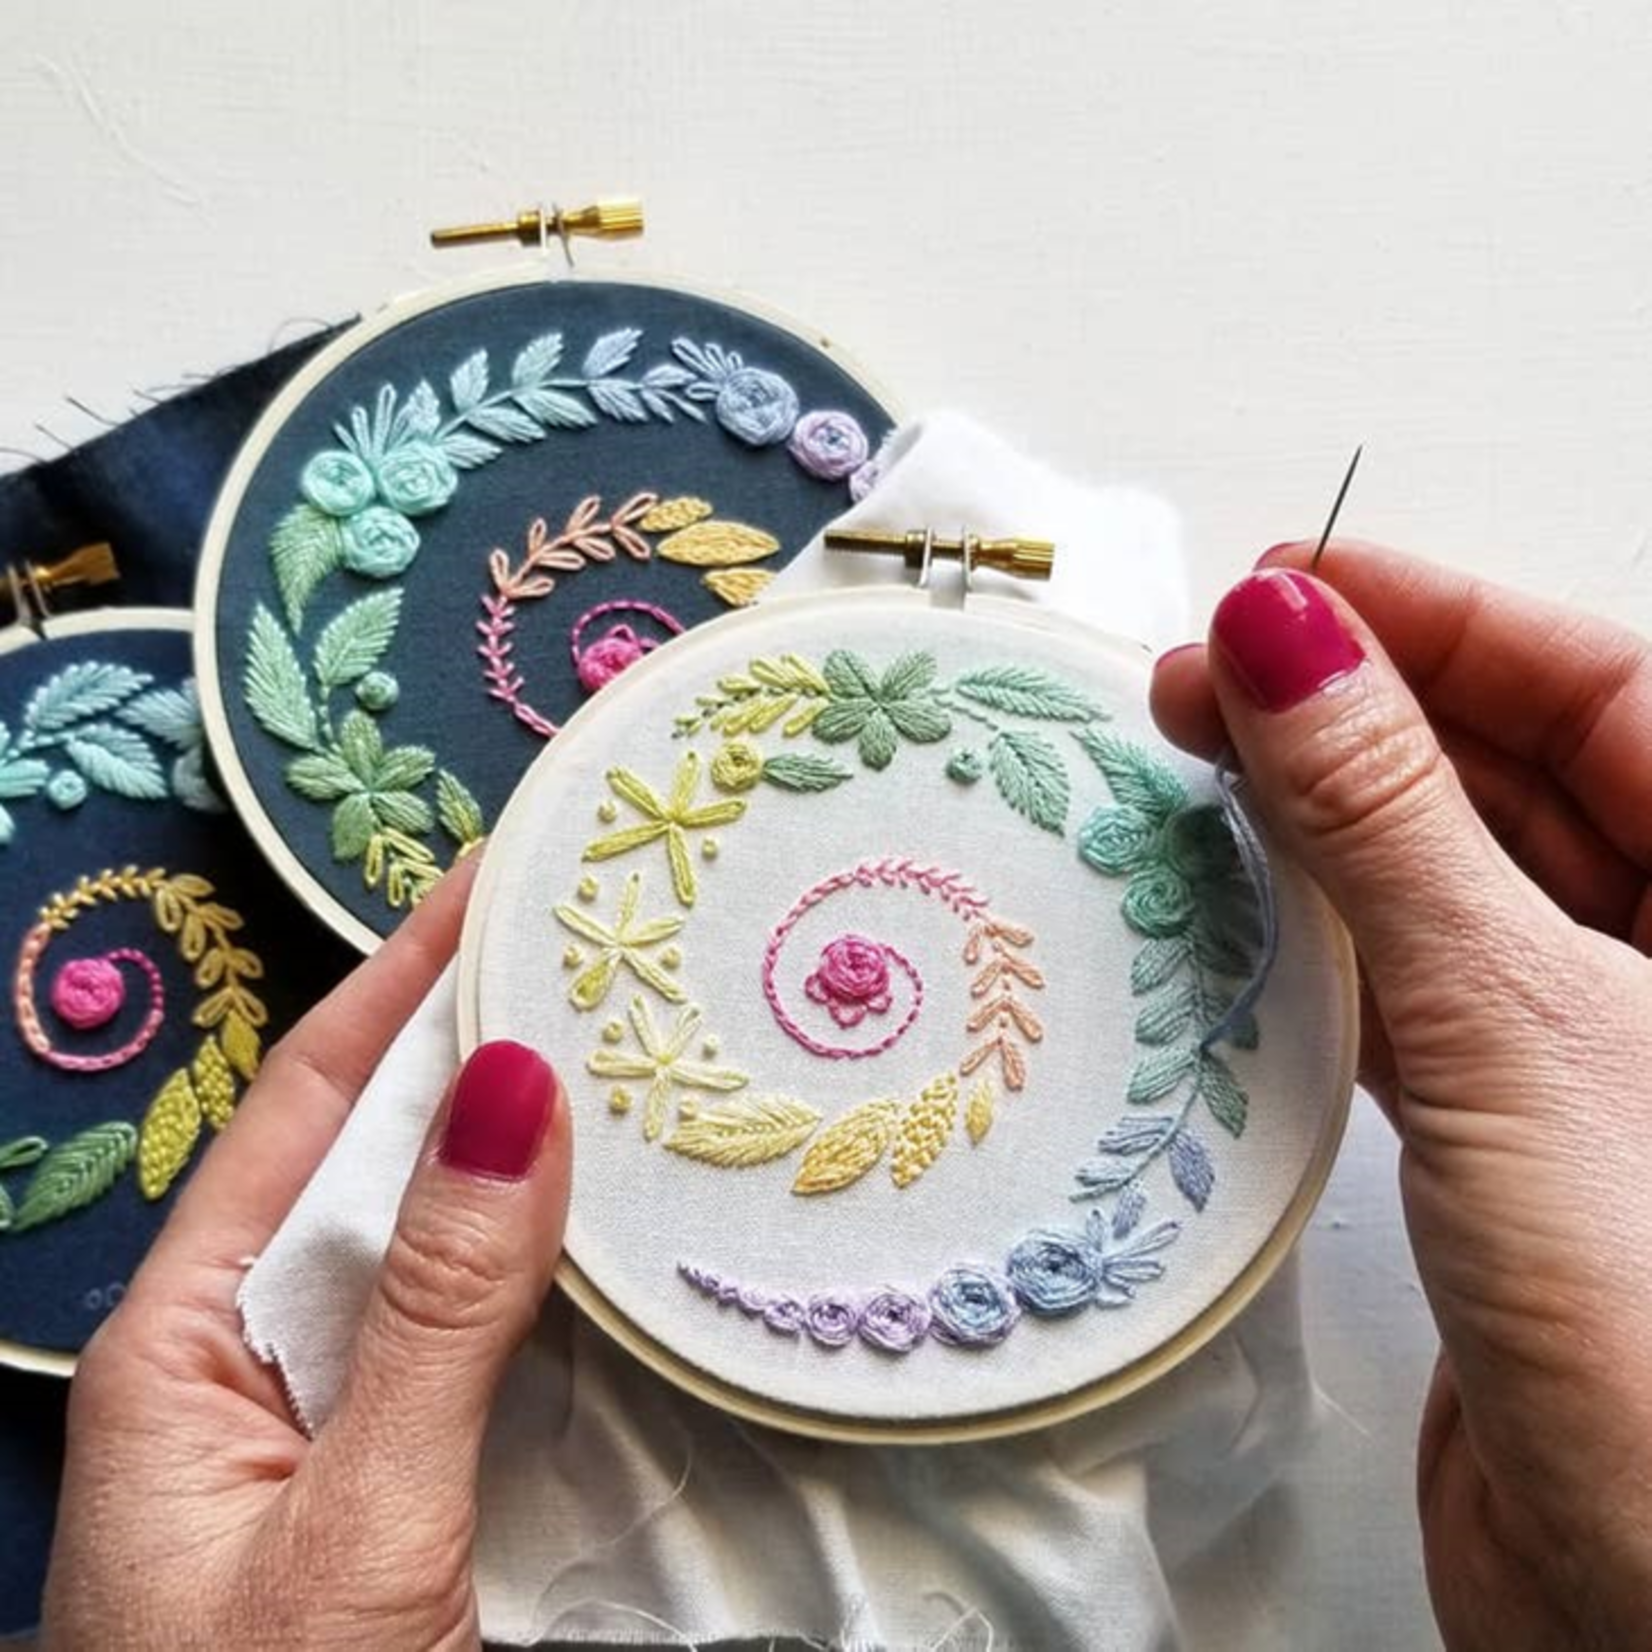 Spiral Sampler Beginner Embroidery Kit - White